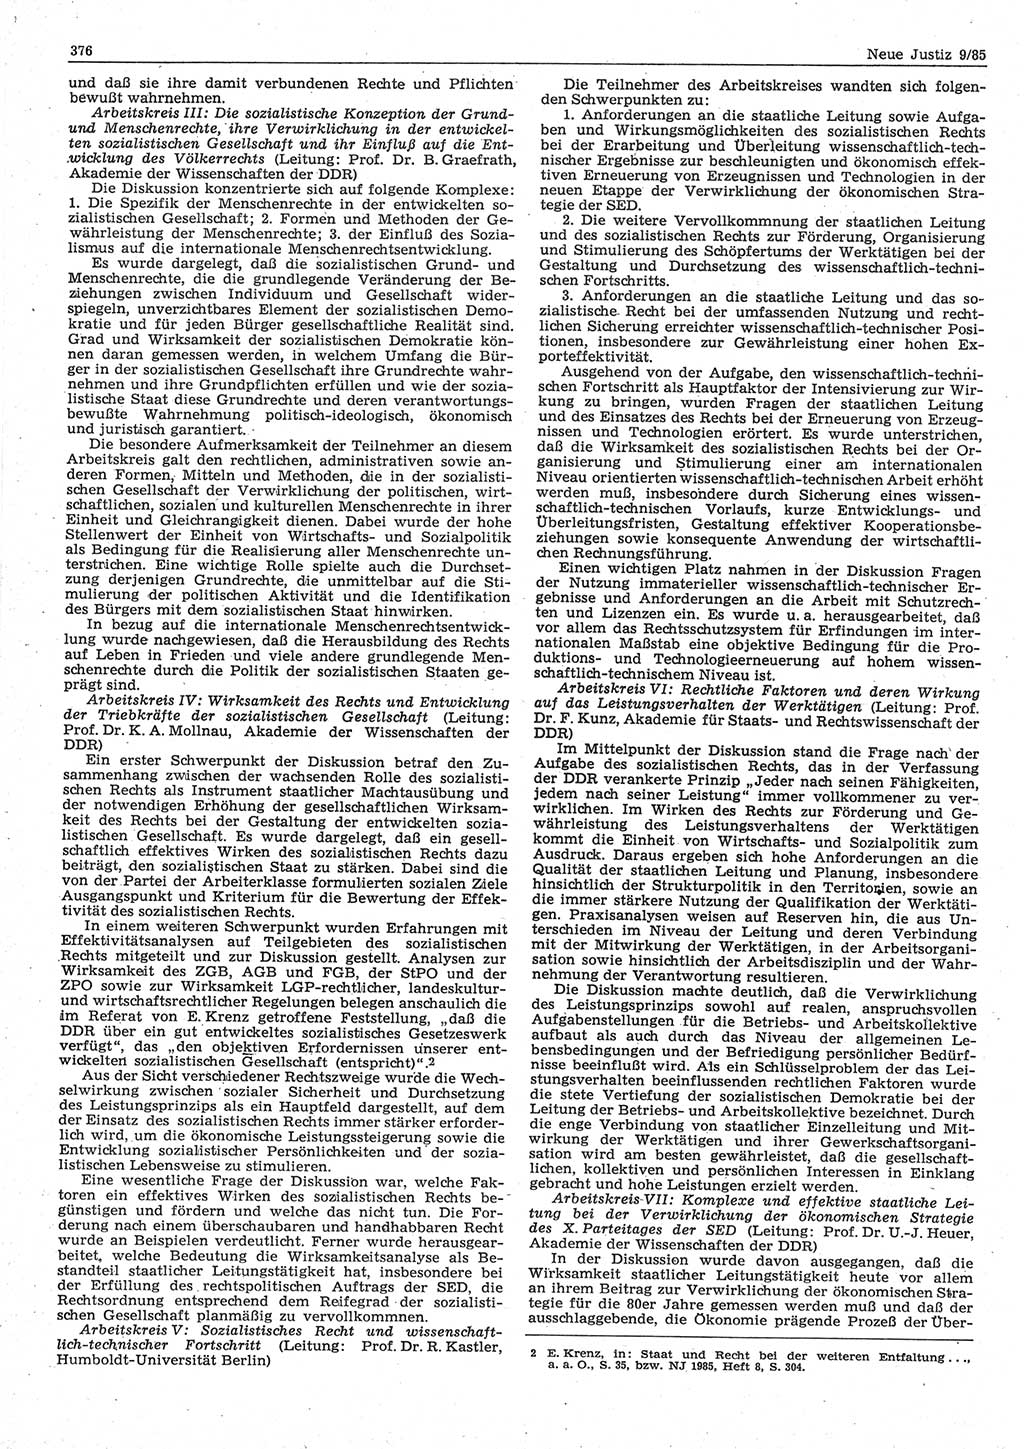 Neue Justiz (NJ), Zeitschrift für sozialistisches Recht und Gesetzlichkeit [Deutsche Demokratische Republik (DDR)], 39. Jahrgang 1985, Seite 376 (NJ DDR 1985, S. 376)